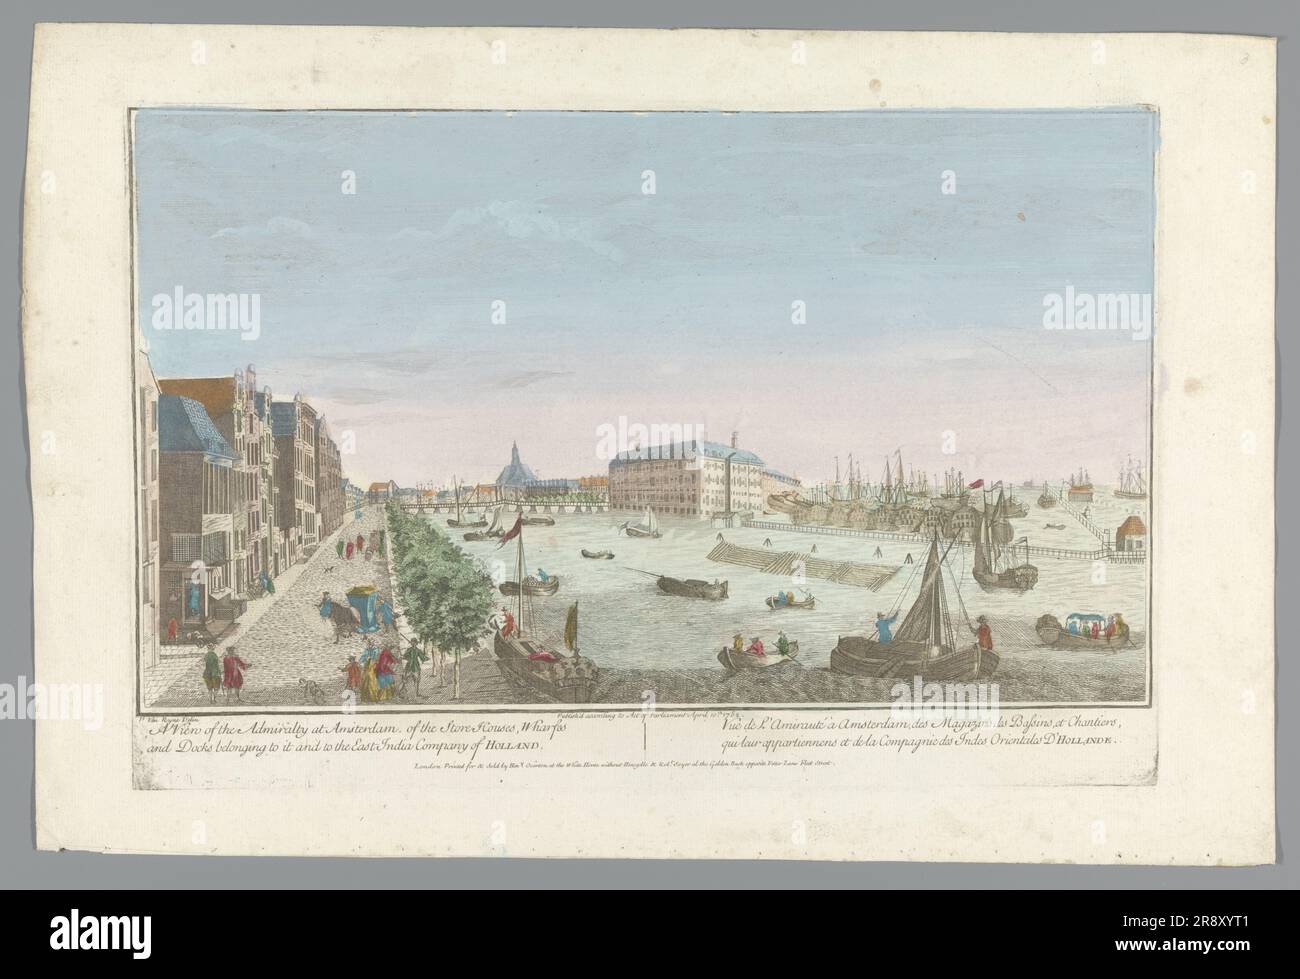 Vue sur l'entrepôt de l'Amirauté à Amsterdam, 1752. 'Une vue de l'Amirauté à Amsterdam, des maisons de magasins, des quais et des quais, appartenant à elle et à la Compagnie de l'Inde de l'est des pays-Bas'. Notez la chaise de berline en bas à gauche. Banque D'Images